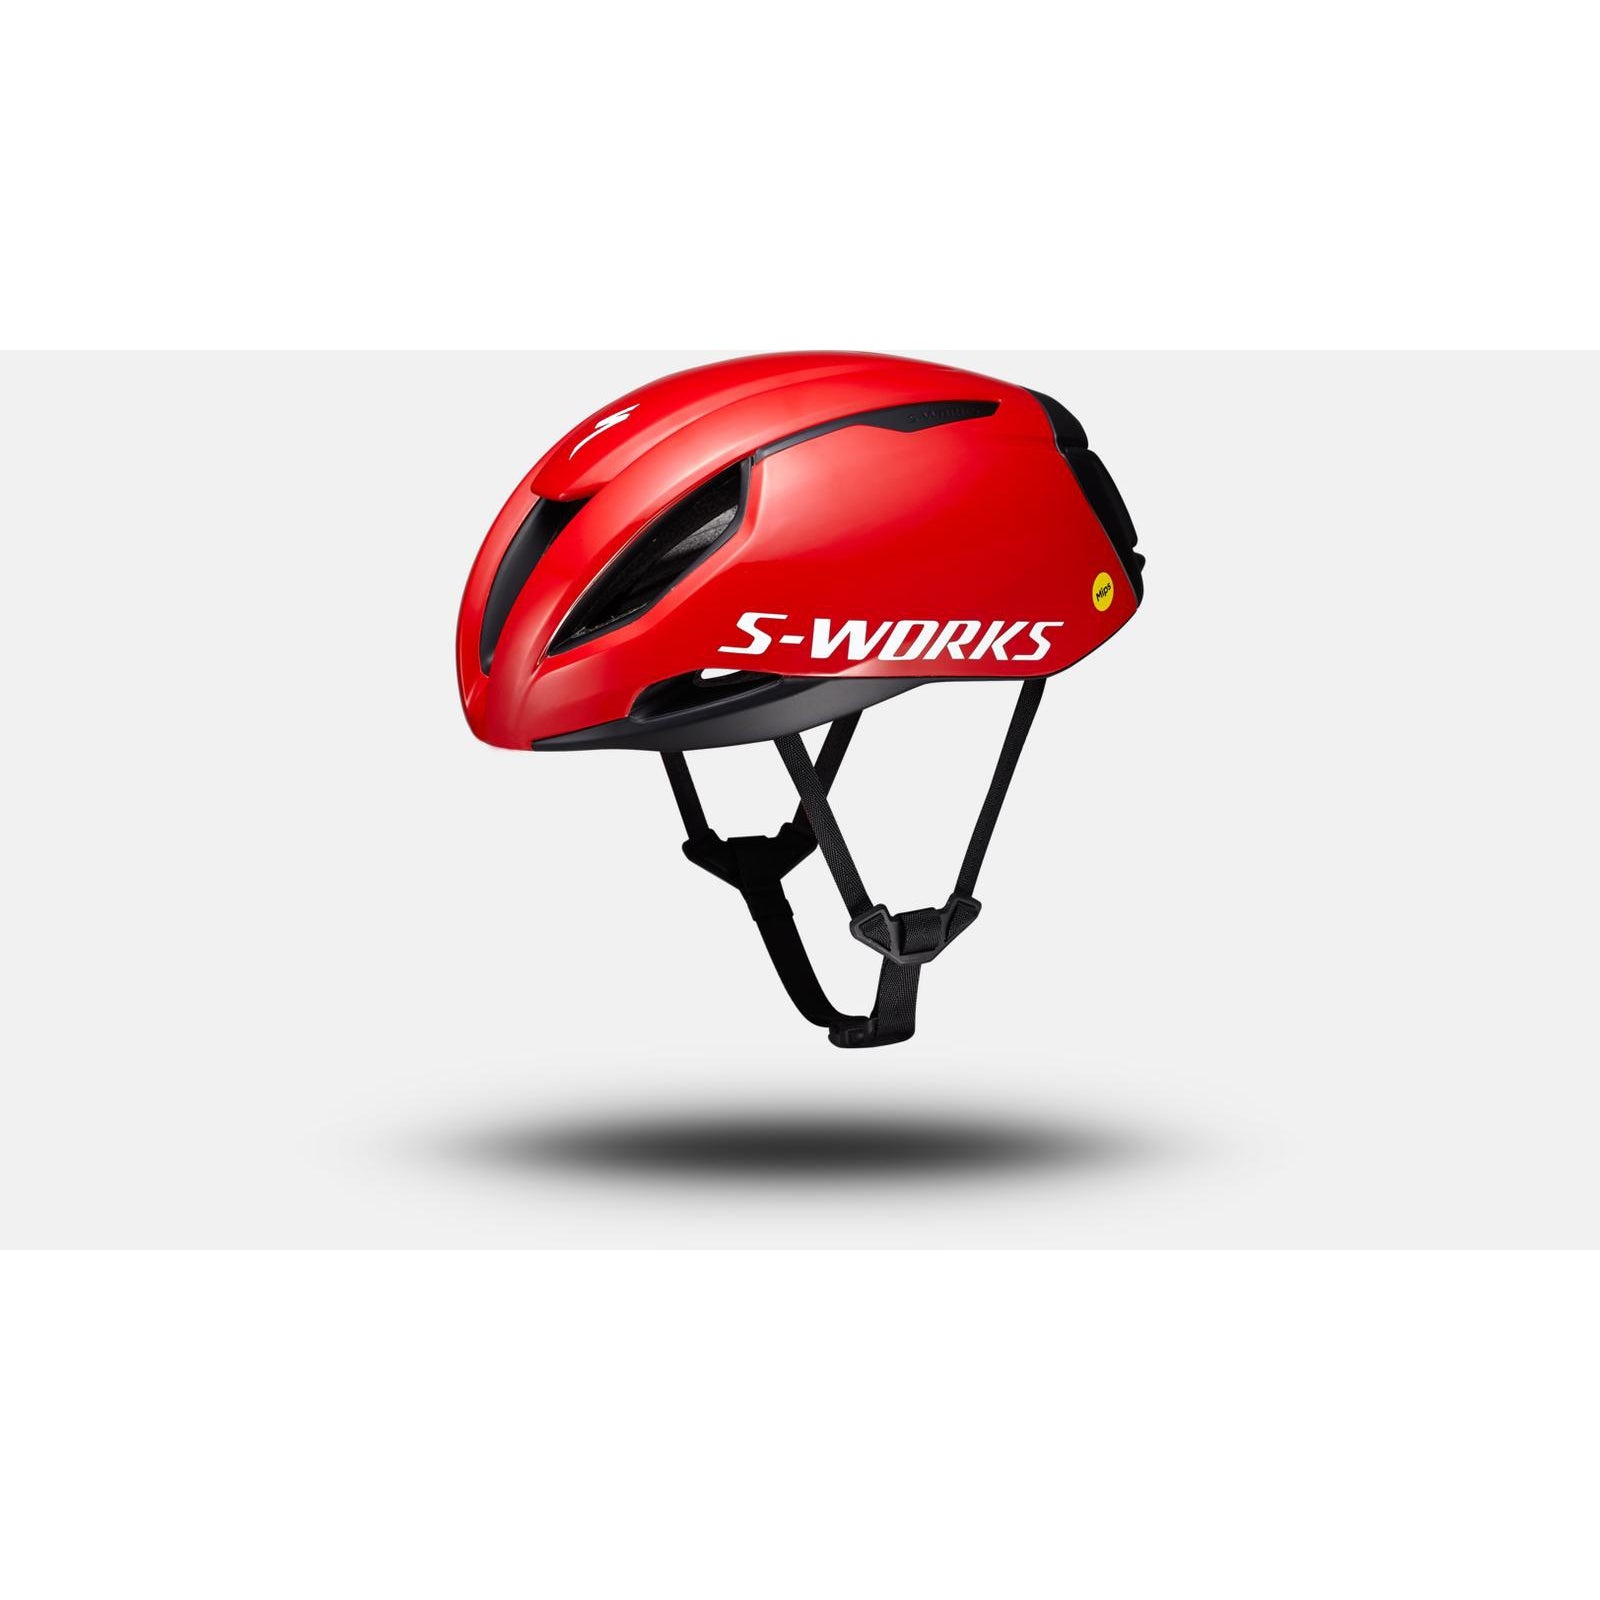 S-Works Evade 3 Road Bike Helmet